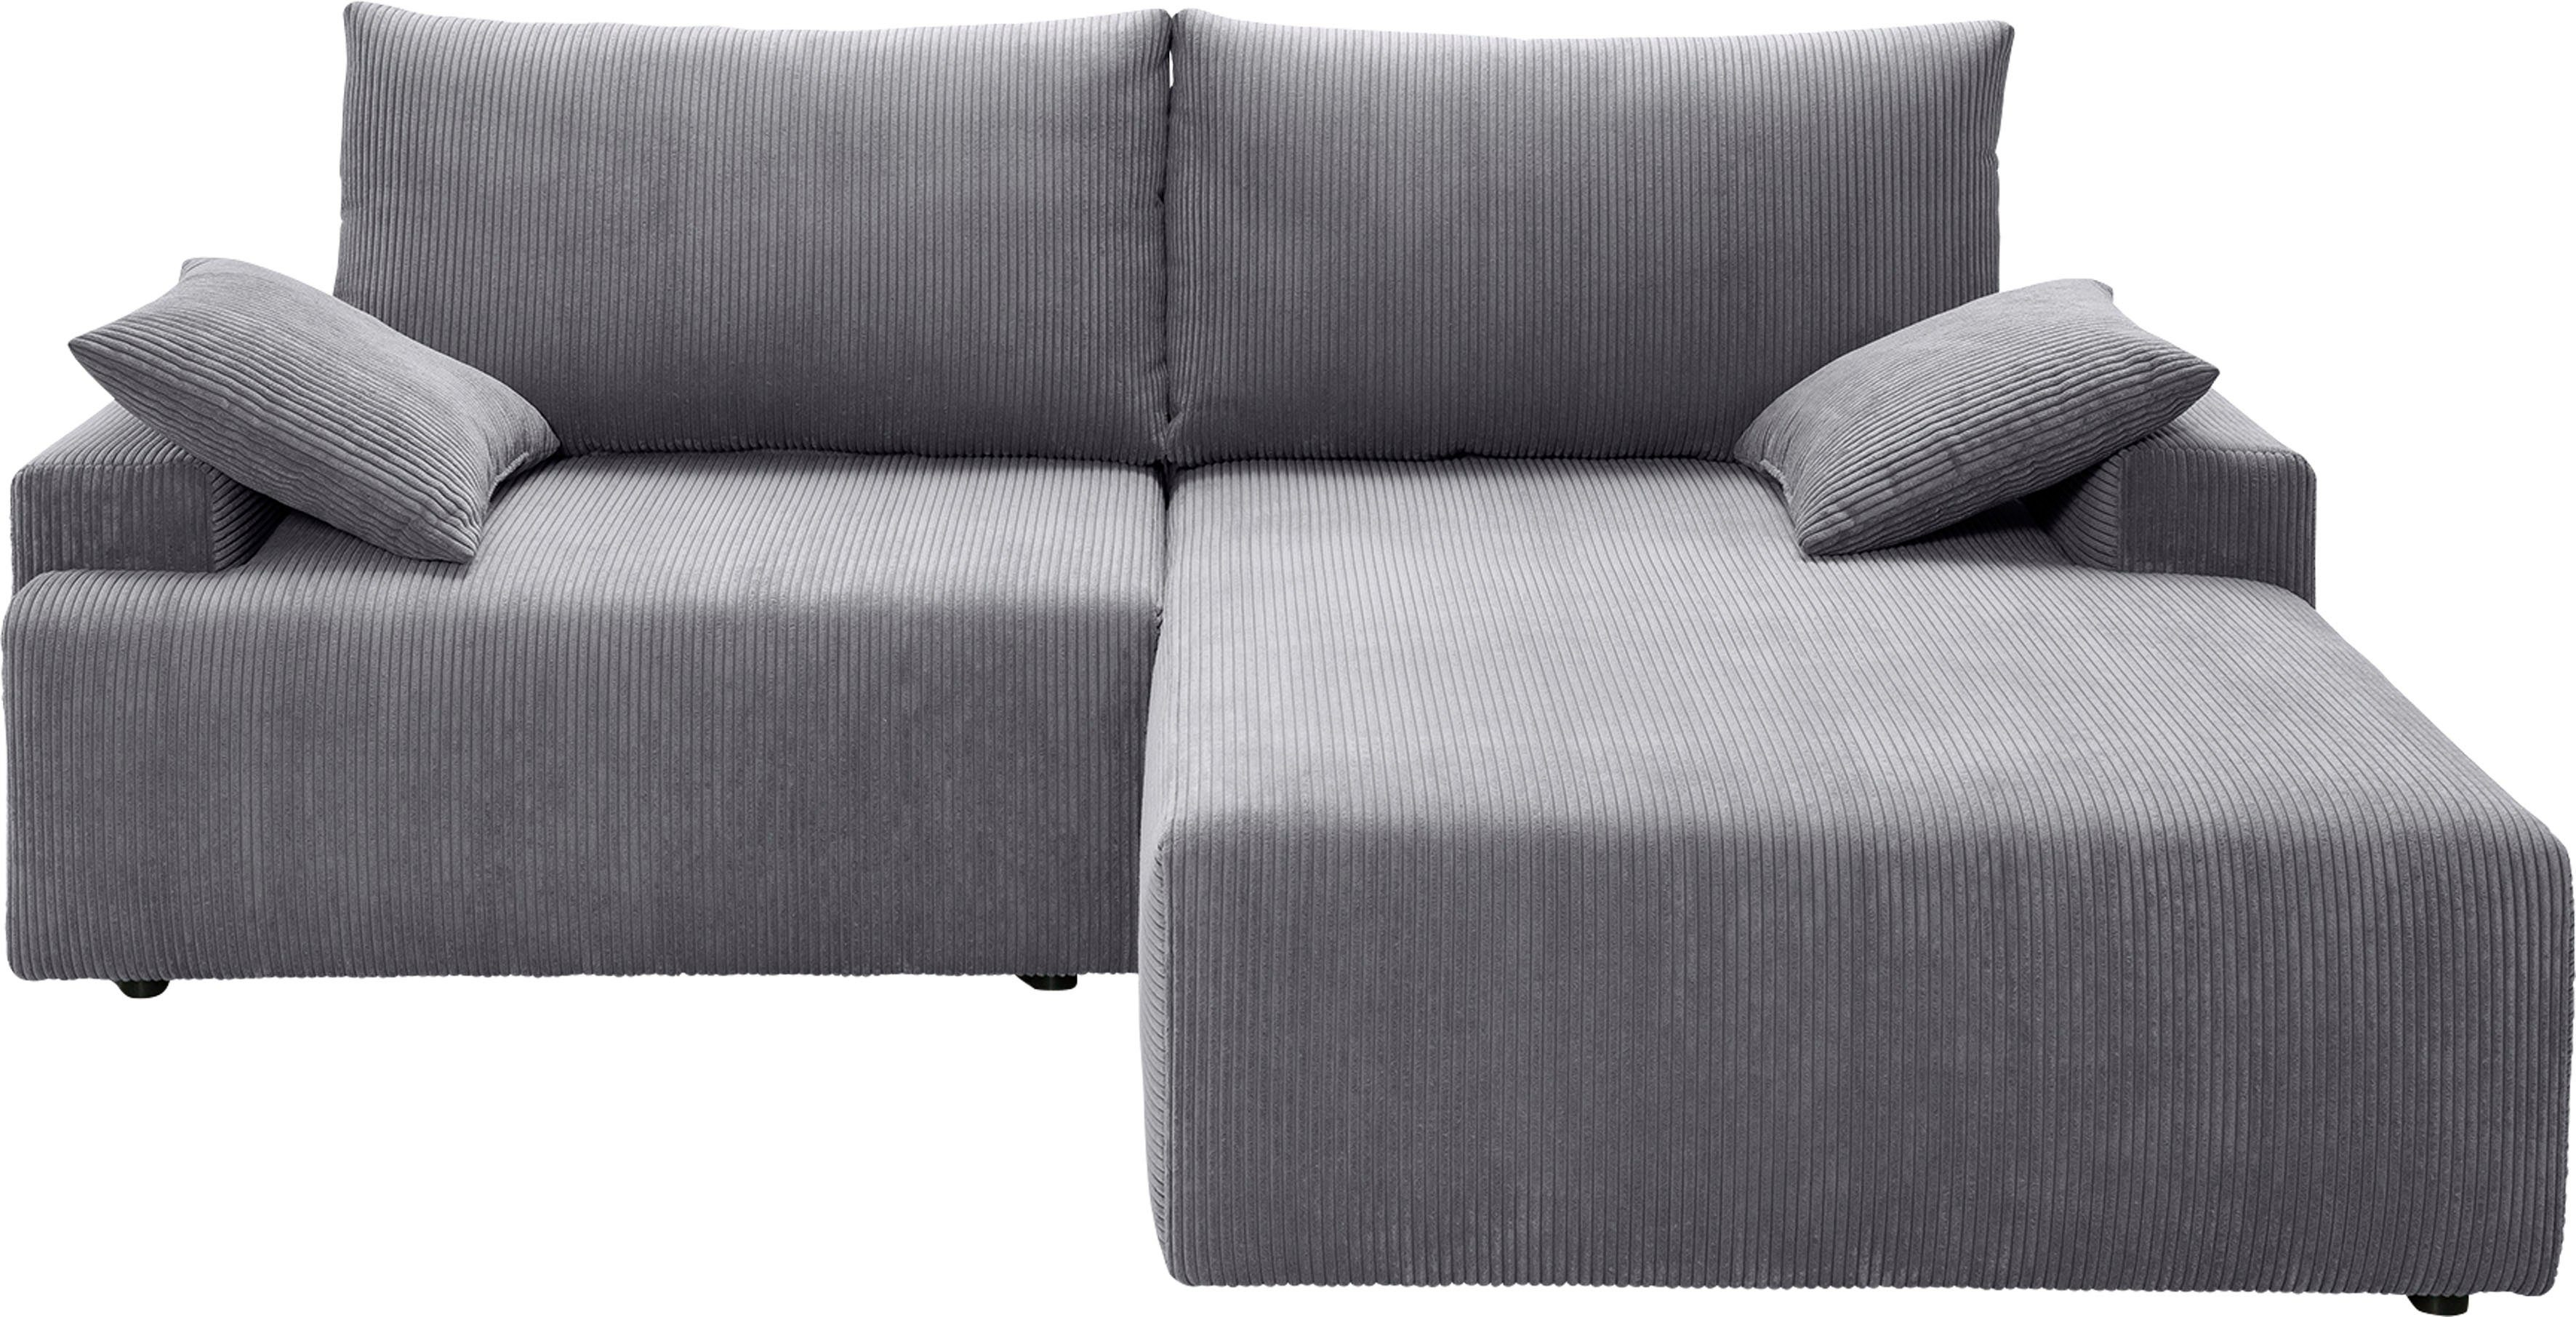 fashion sofa Cord-Farben exxpo Ecksofa verschiedenen Orinoko, inklusive Bettfunktion - in grey Bettkasten und